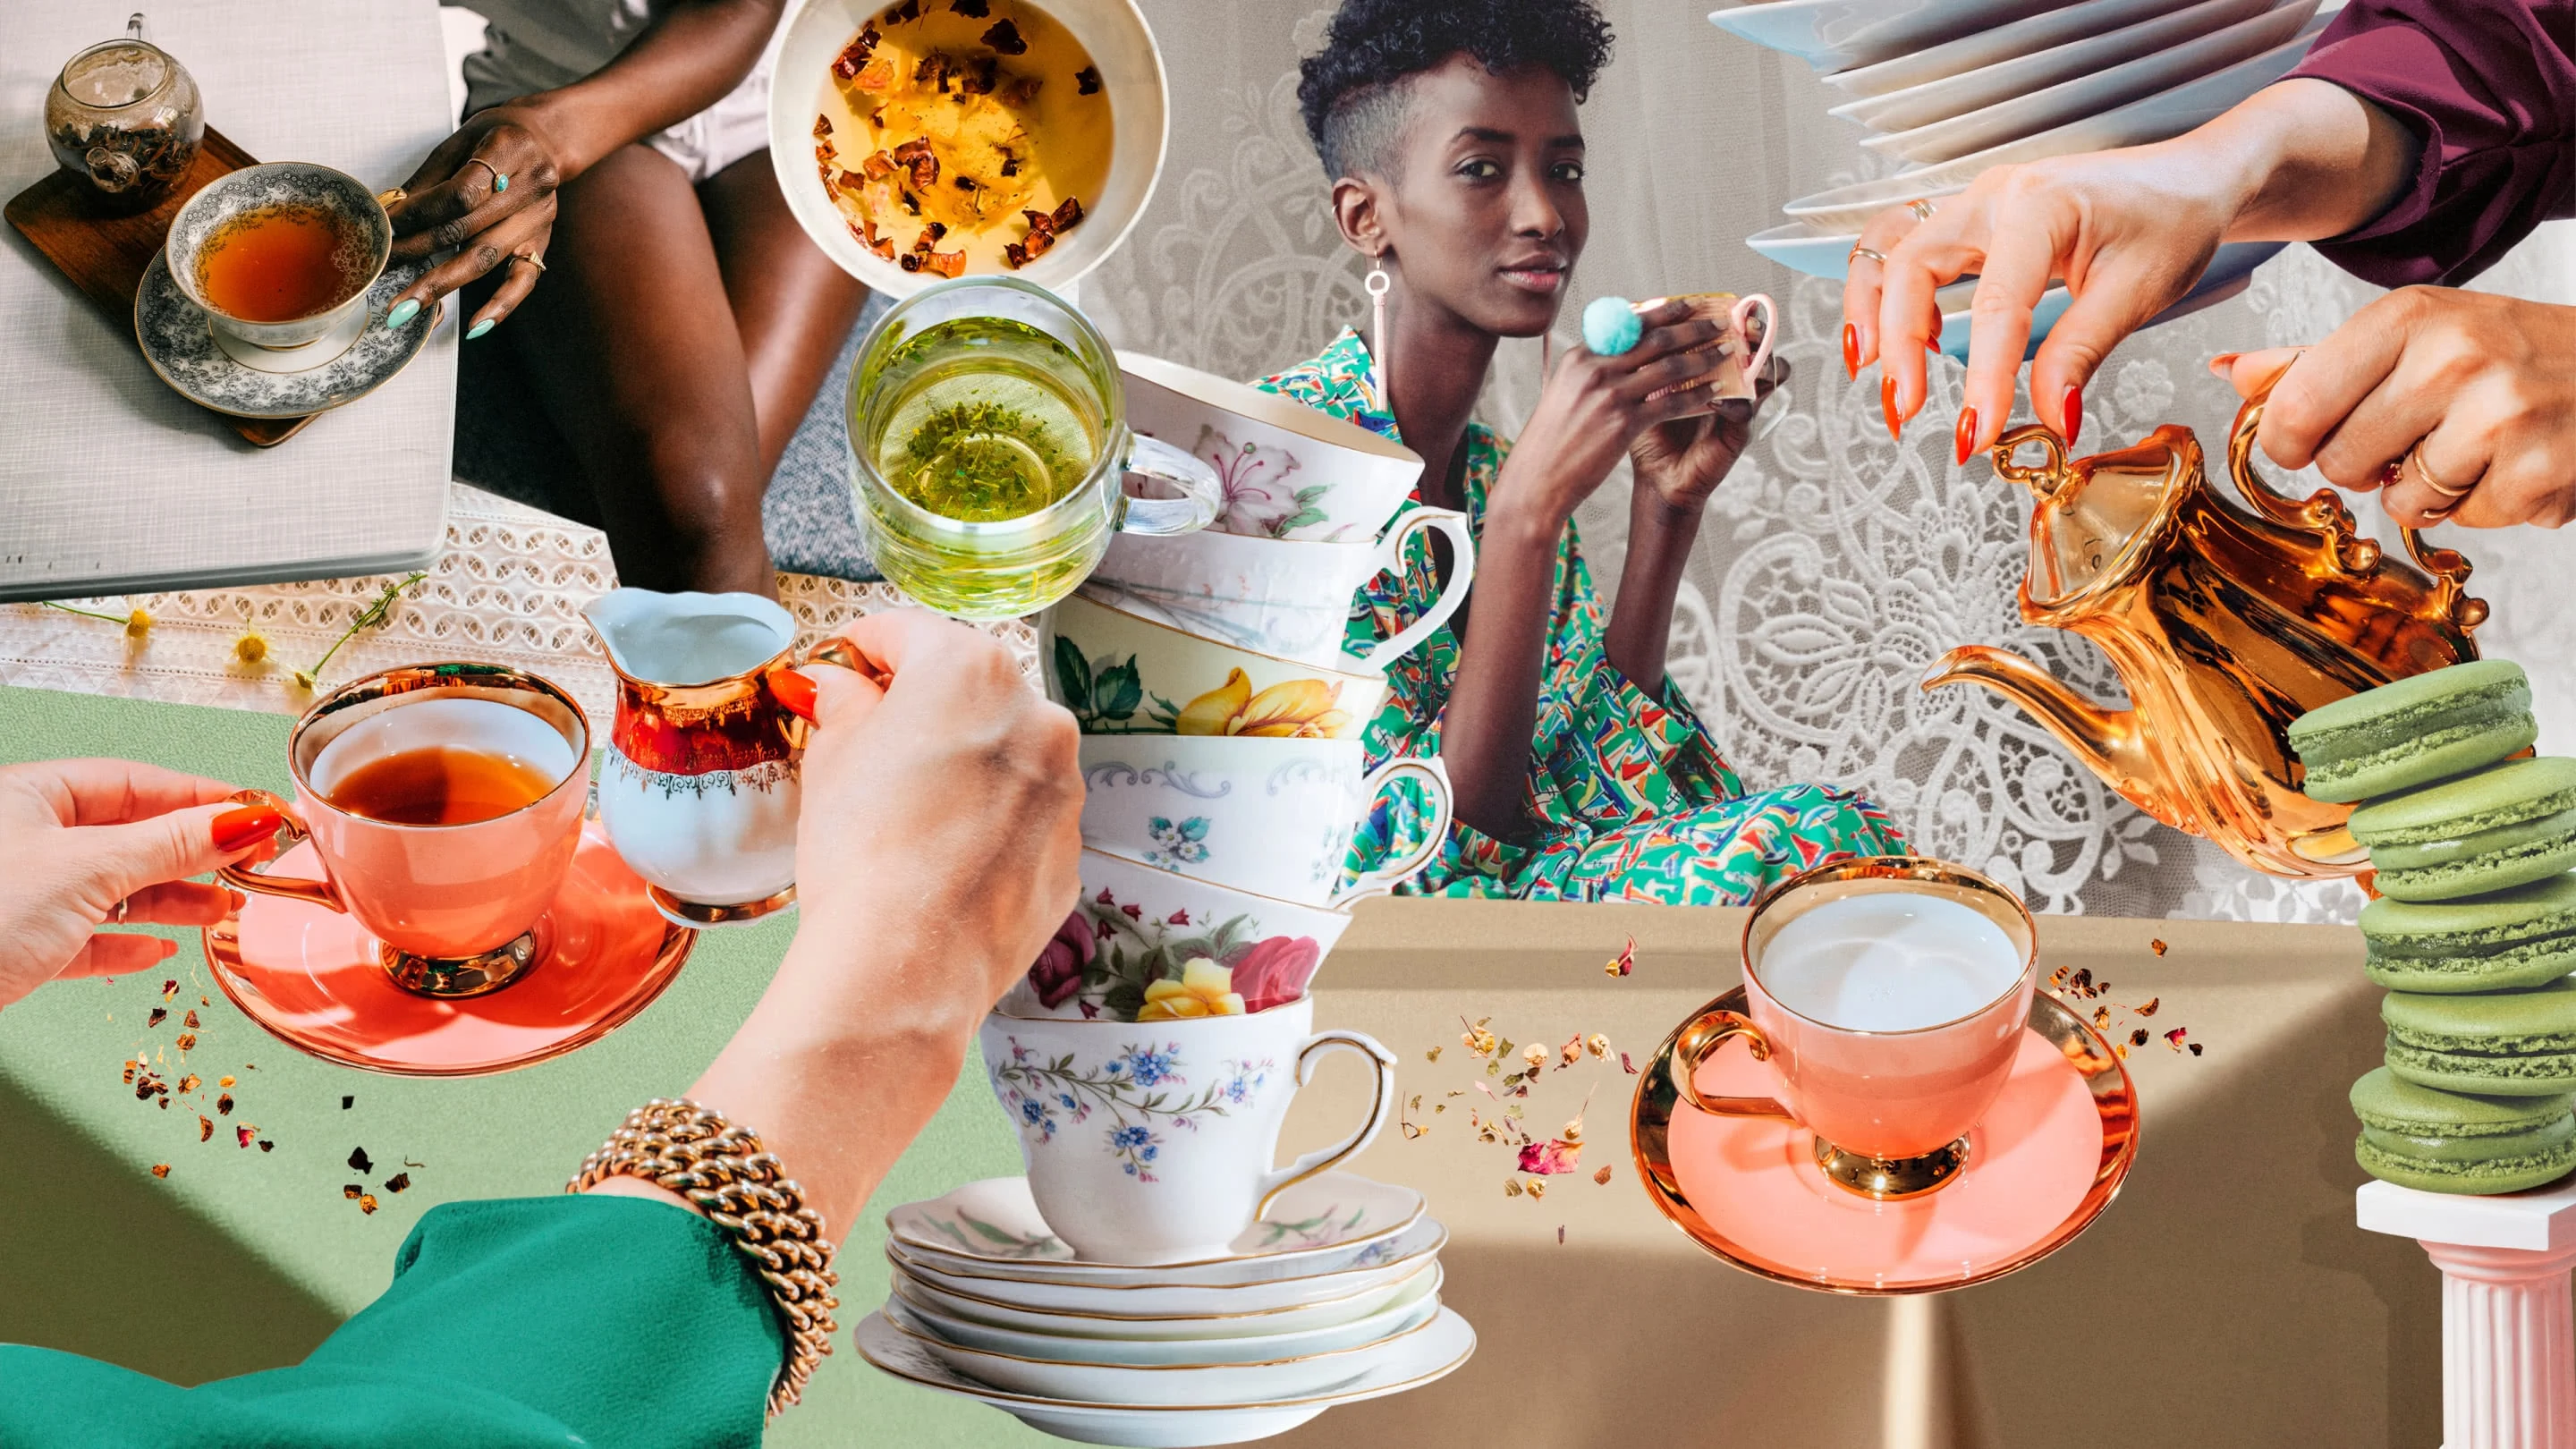 Collage coloré avec des piles de tasses à thé anciennes, d'assiettes et de macarons verts, des mains tenant un pot à crème au-dessus d'une tasse de thé ambré et, au centre, une femme noire habillée en vert qui regarde vers l'objectif en tenant une tasse dorée